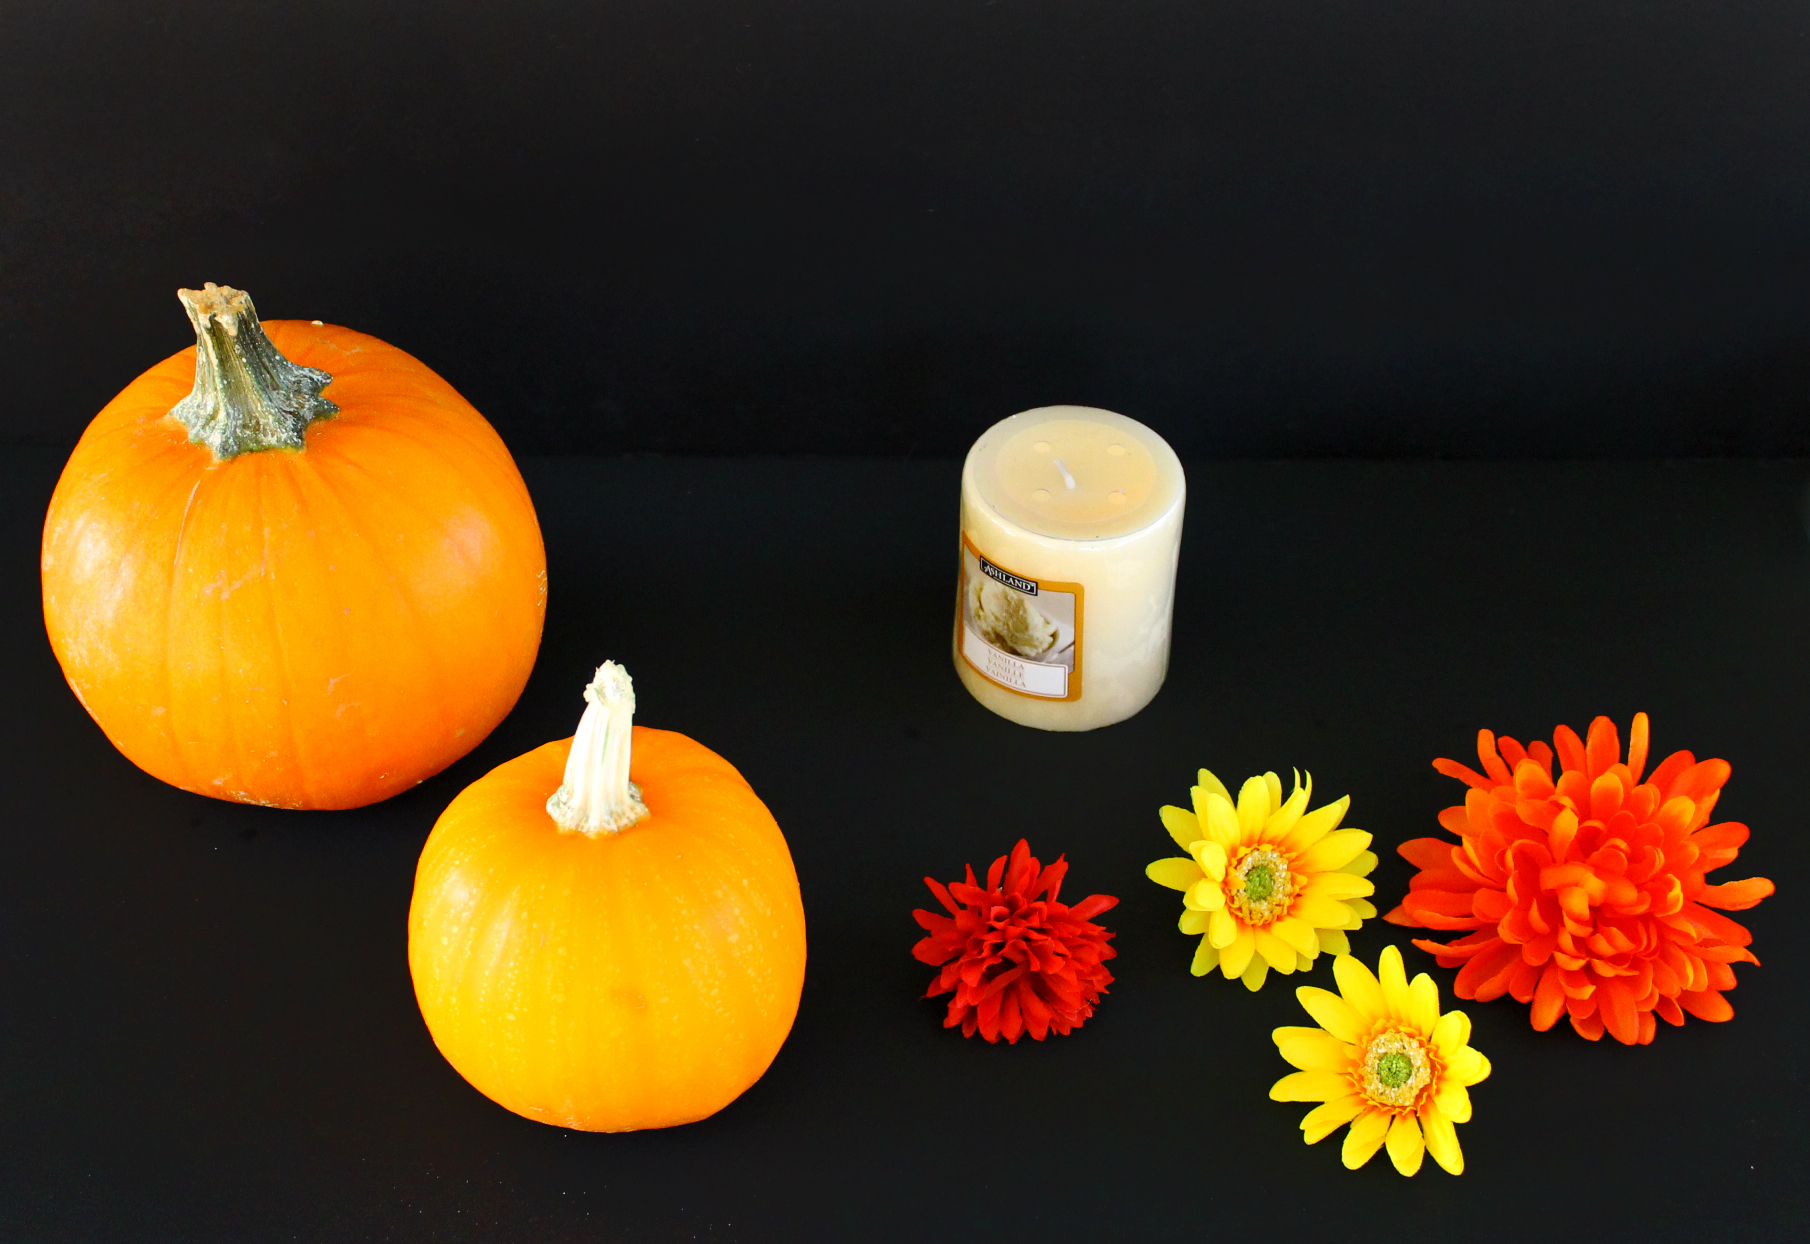 Day of the Dead DIY calavera pumpkin candle decor